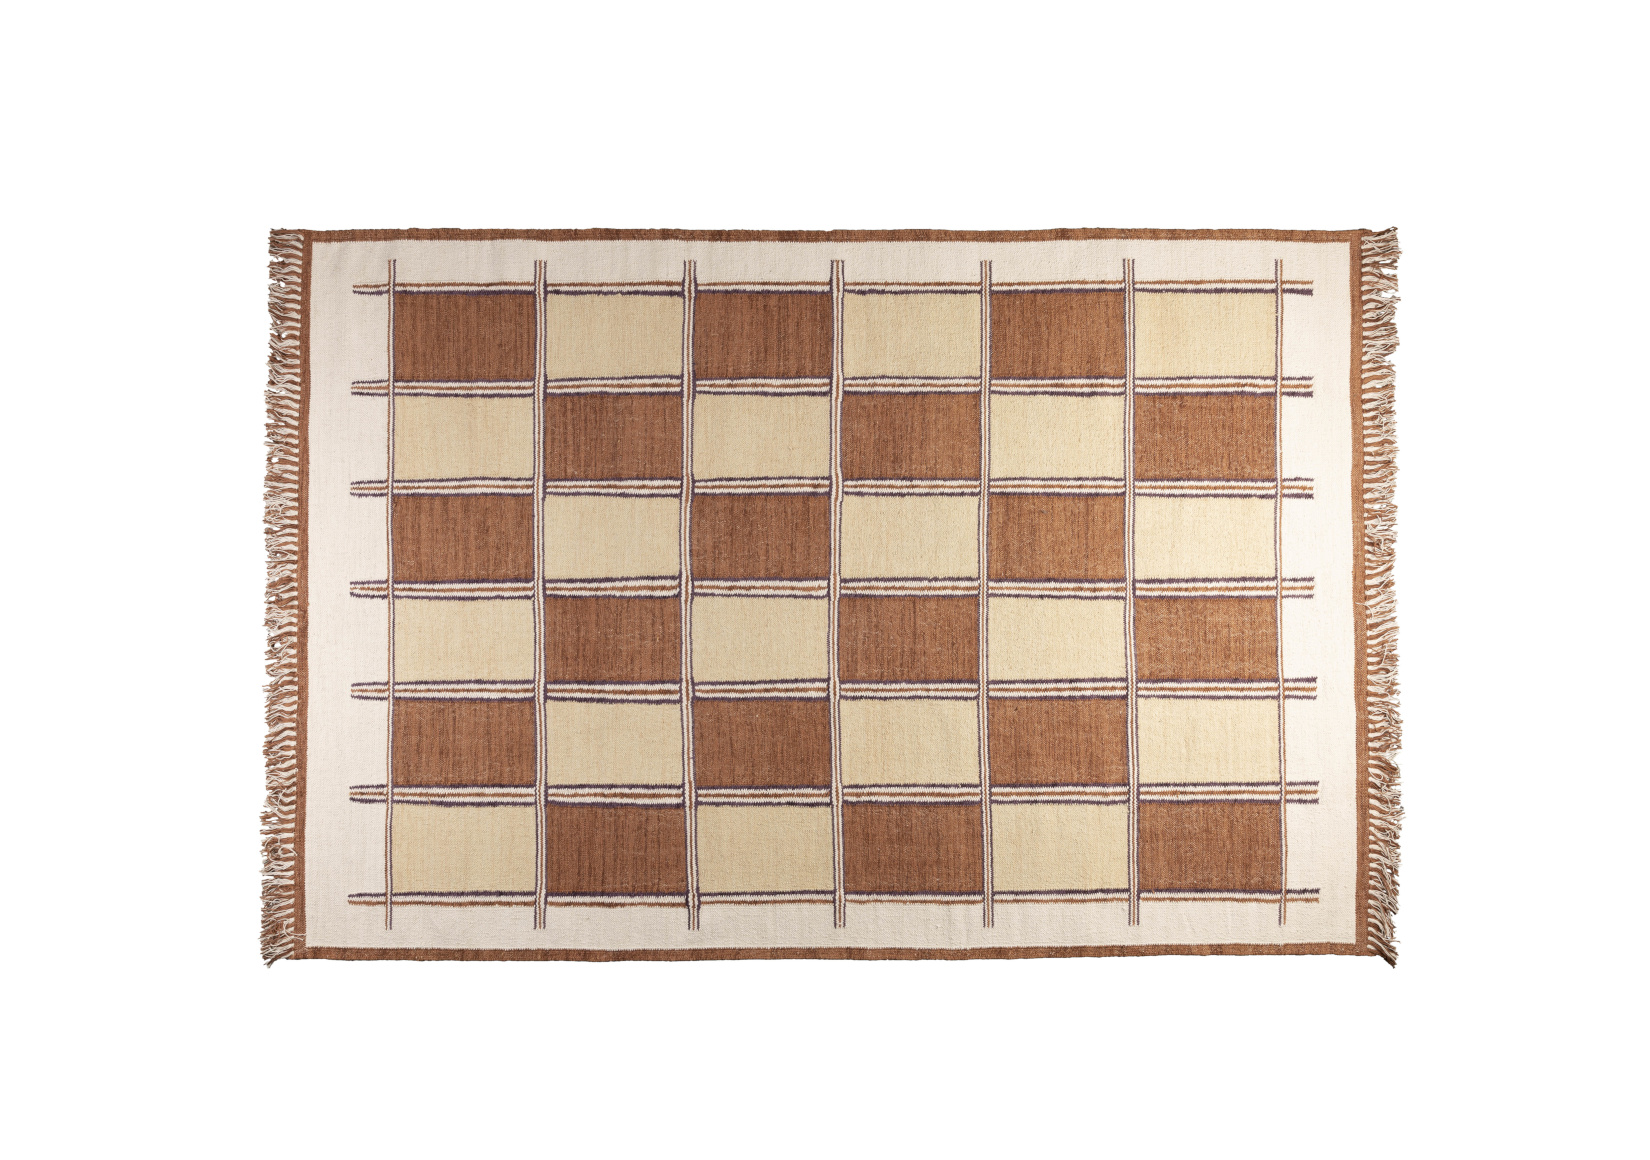 Gambit Teppich, 160 x 230 cm, beige